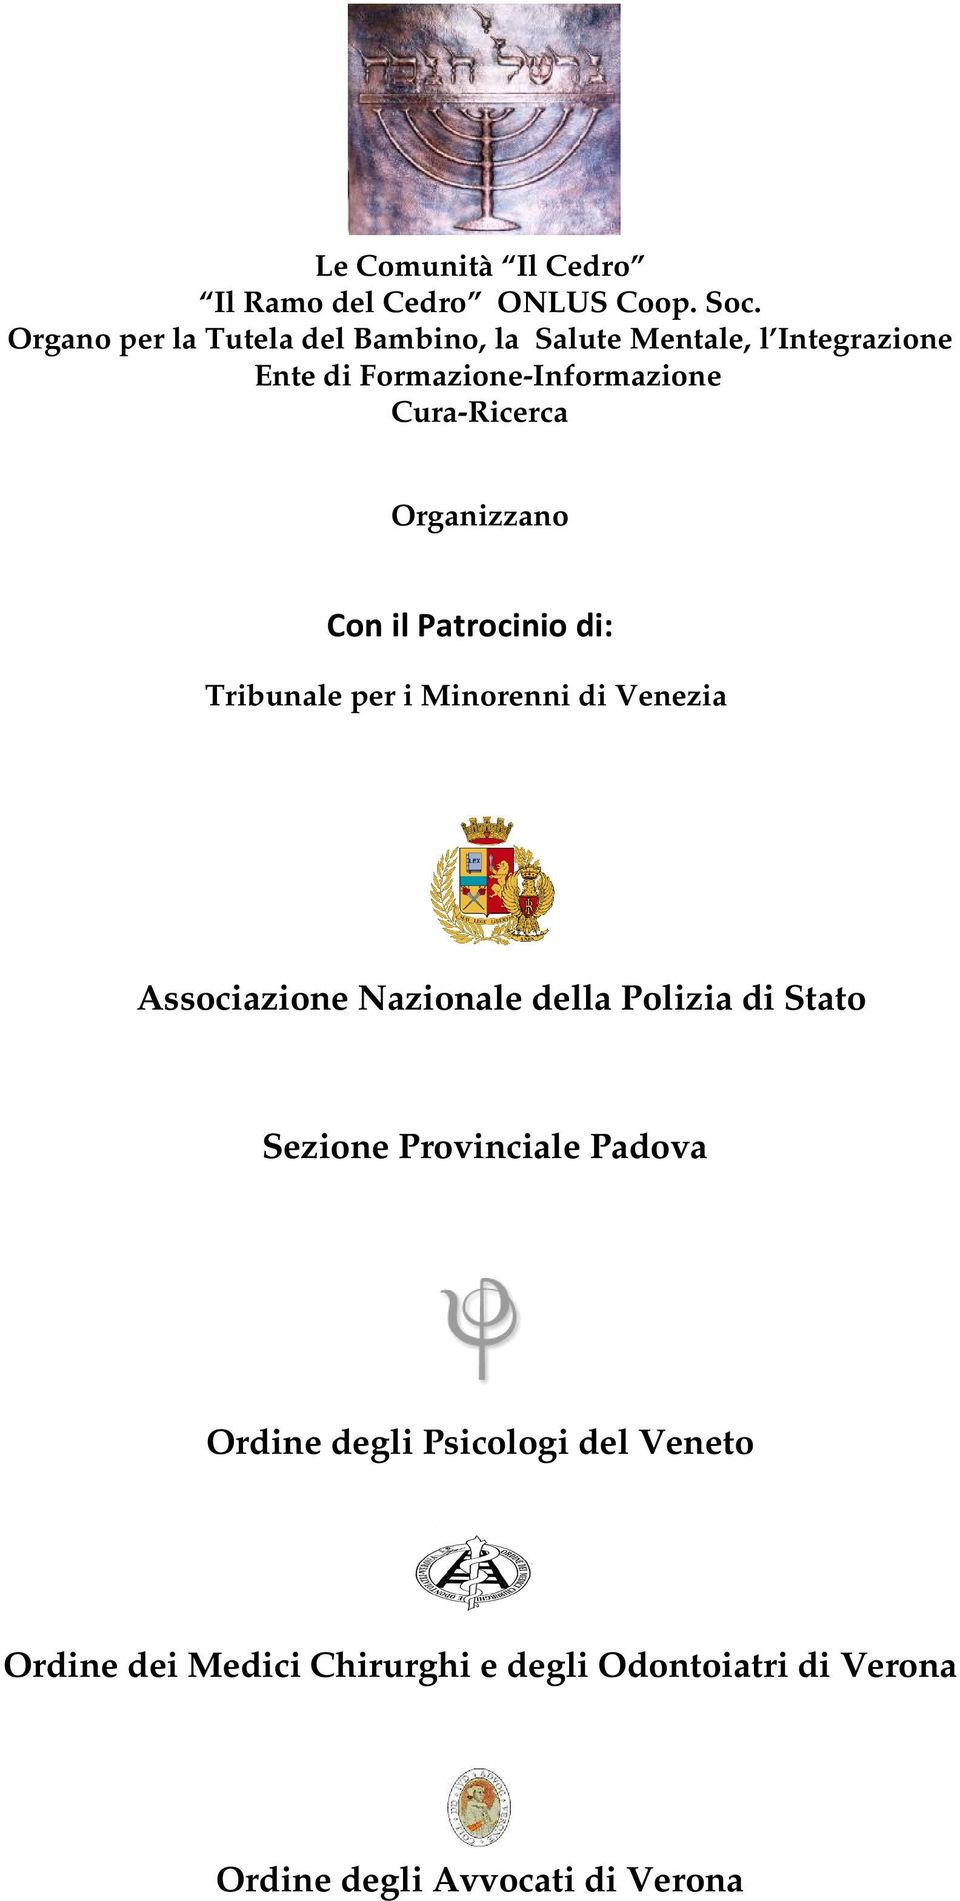 Cura-Ricerca Organizzano Con il Patrocinio di: Tribunale per i Minorenni di Venezia Associazione Nazionale